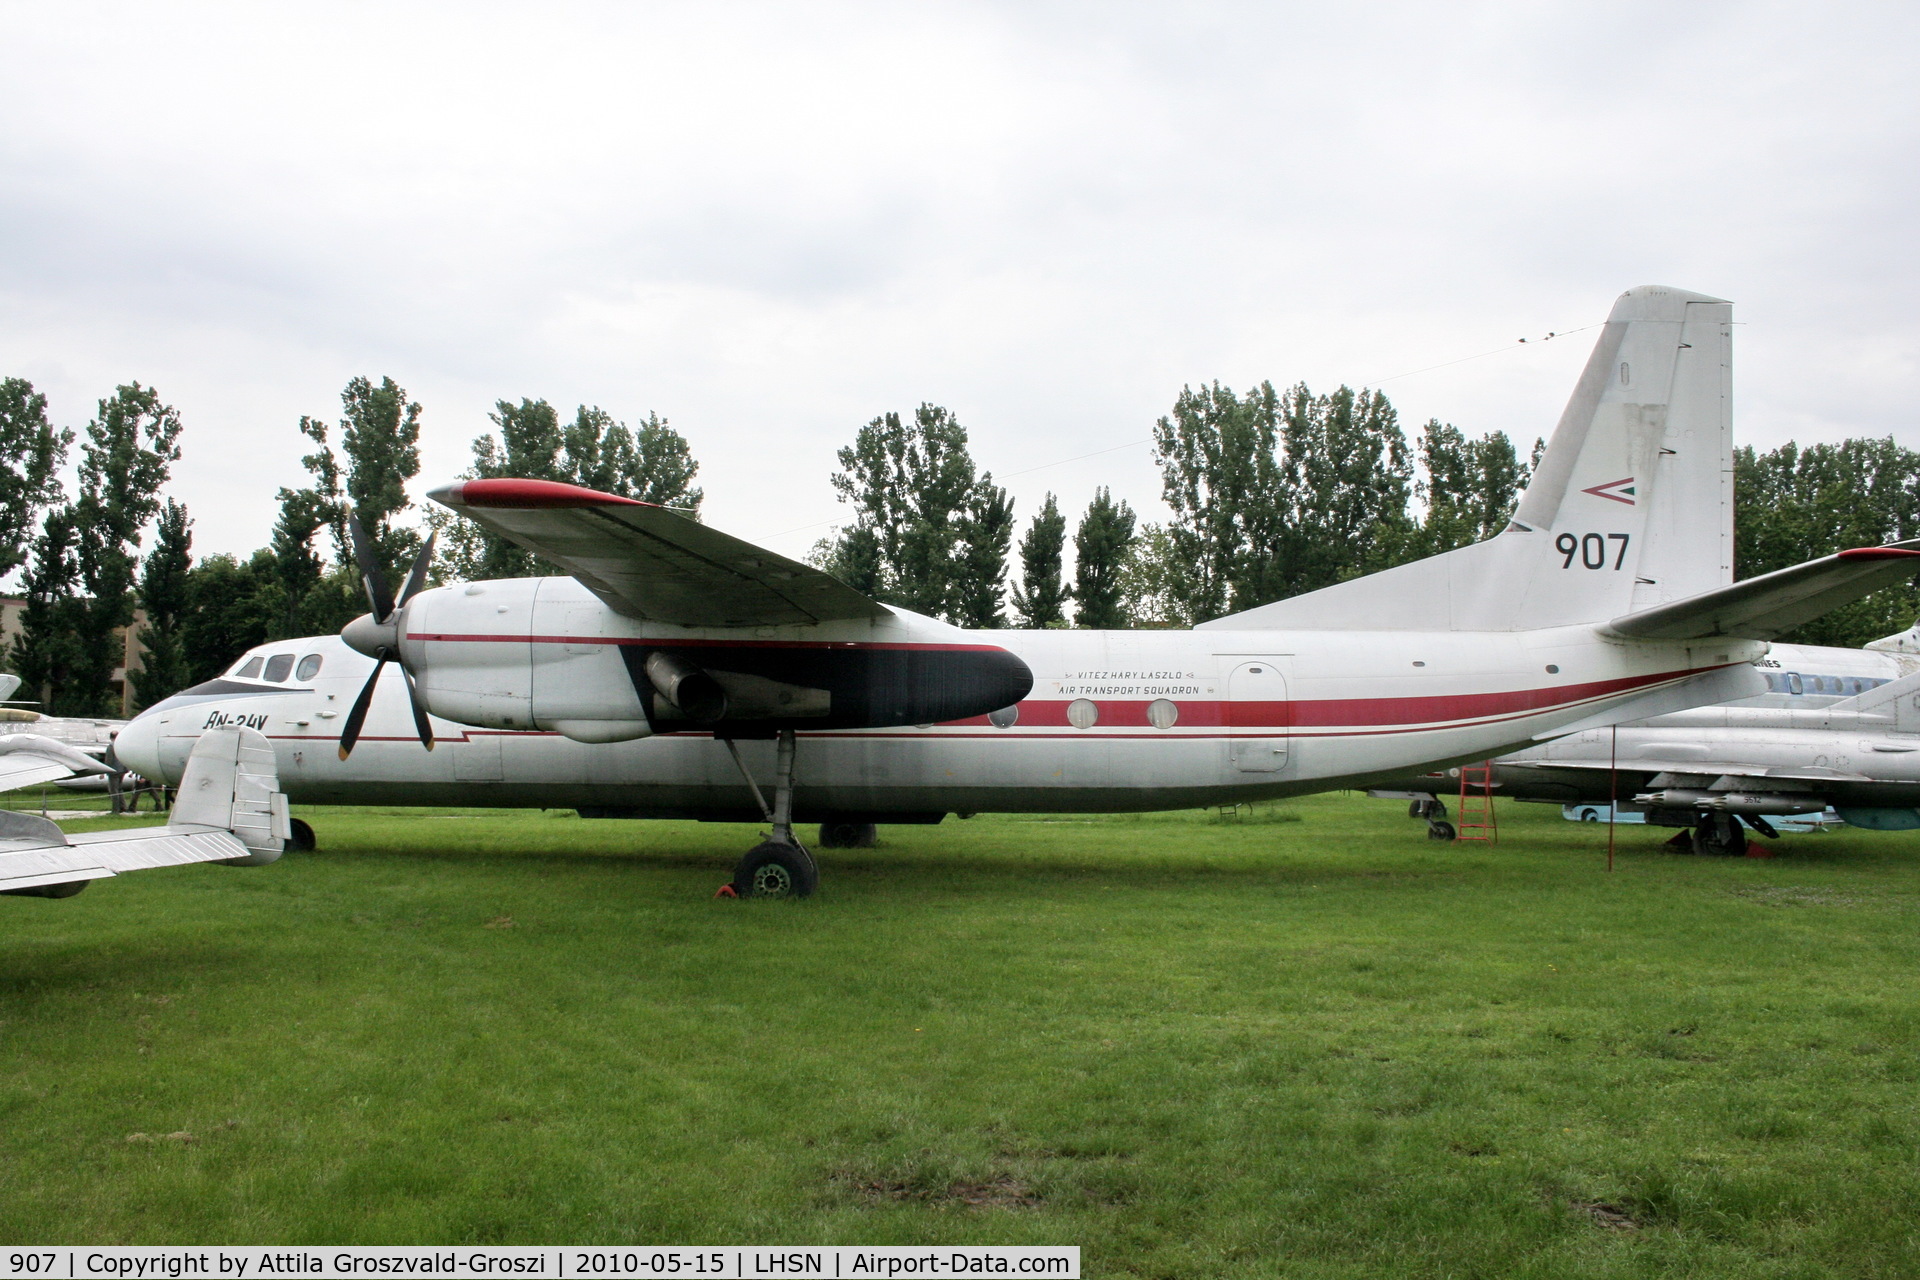 907, 1967 Antonov An-24V C/N 77303907, Szolnok-Szandaszölös airplane museum.